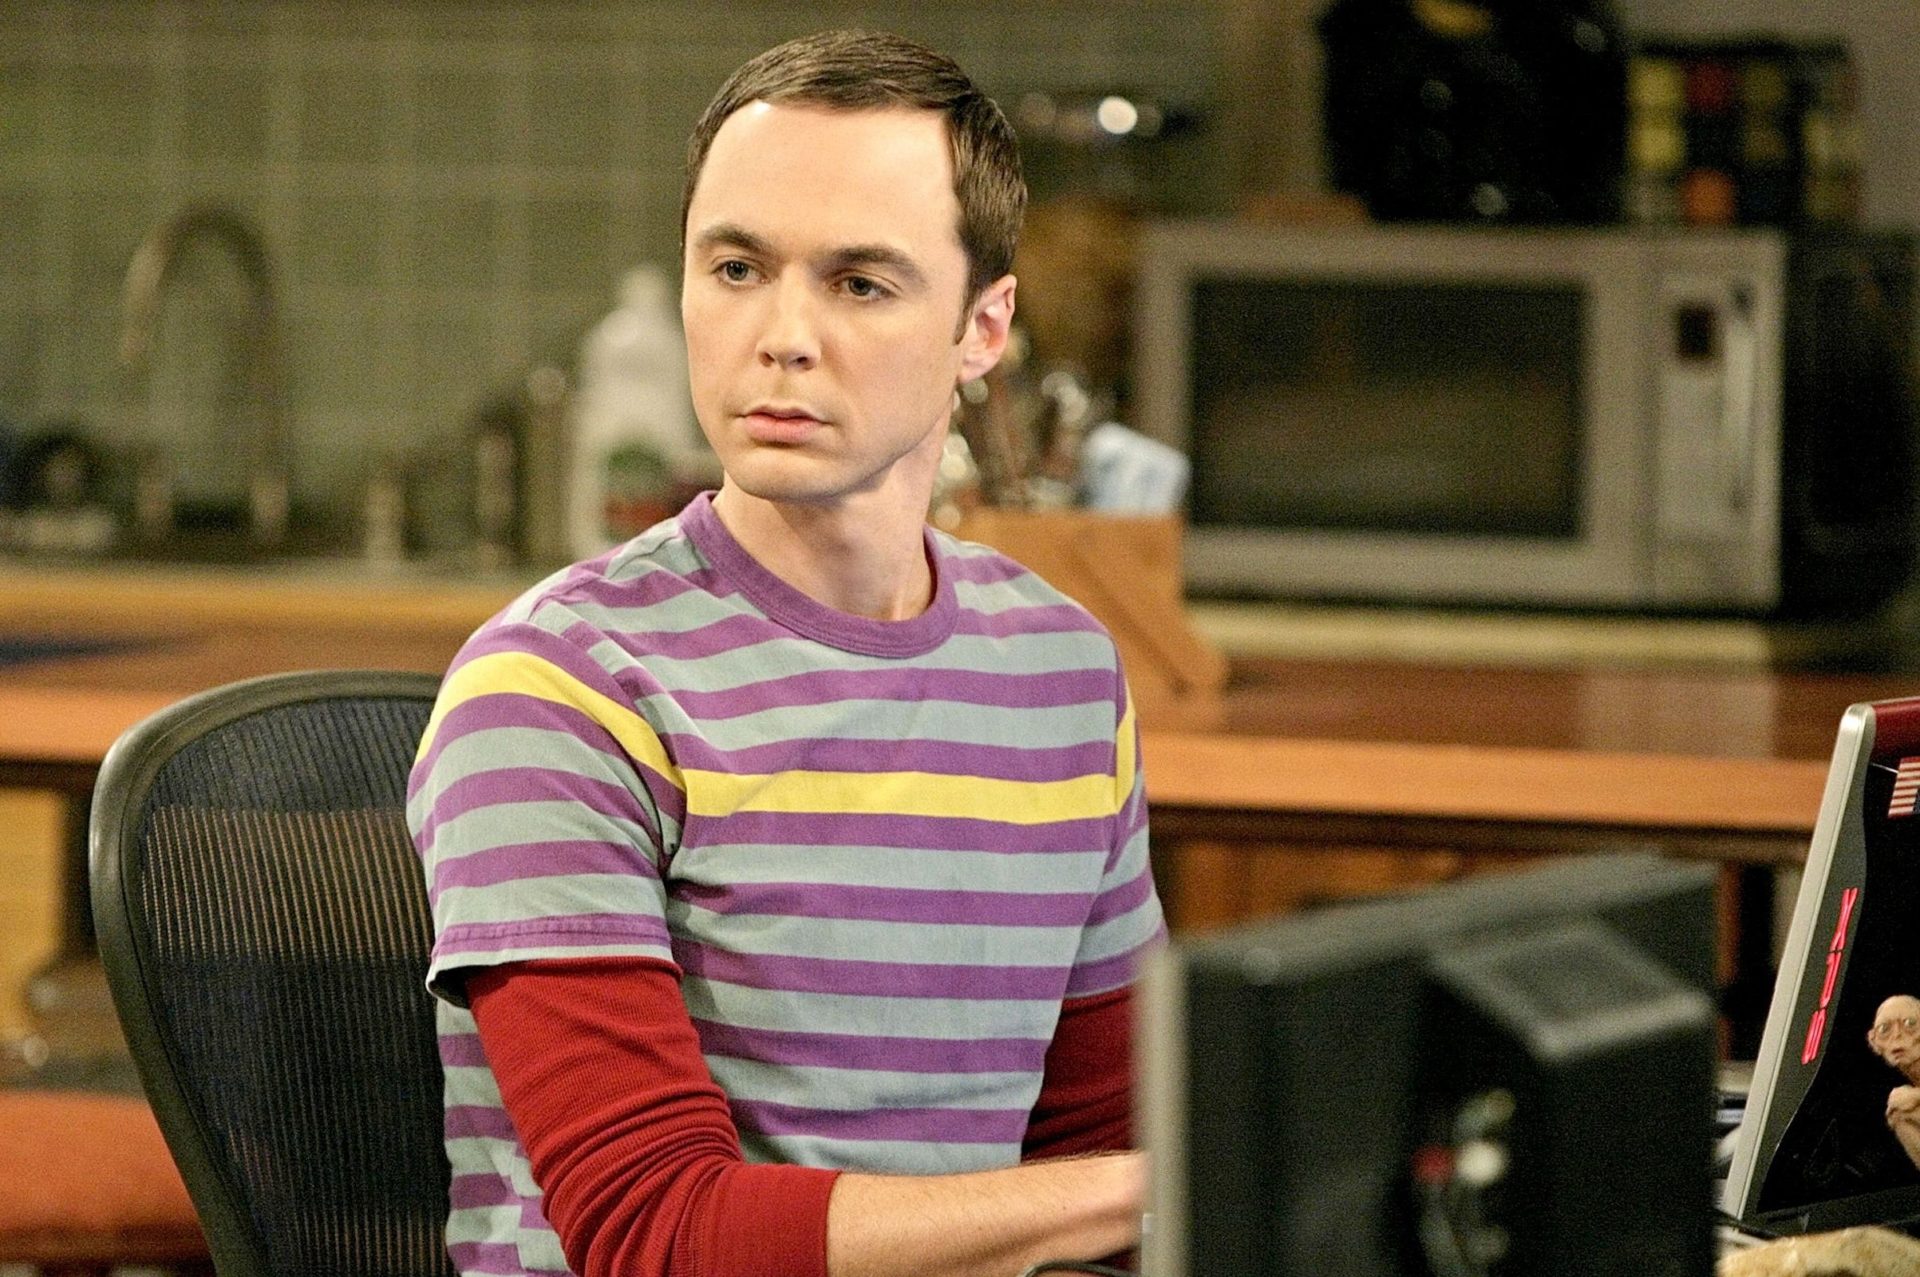 Sheldon choca fãs dos games com erro absurdo em The Big Bang Theory